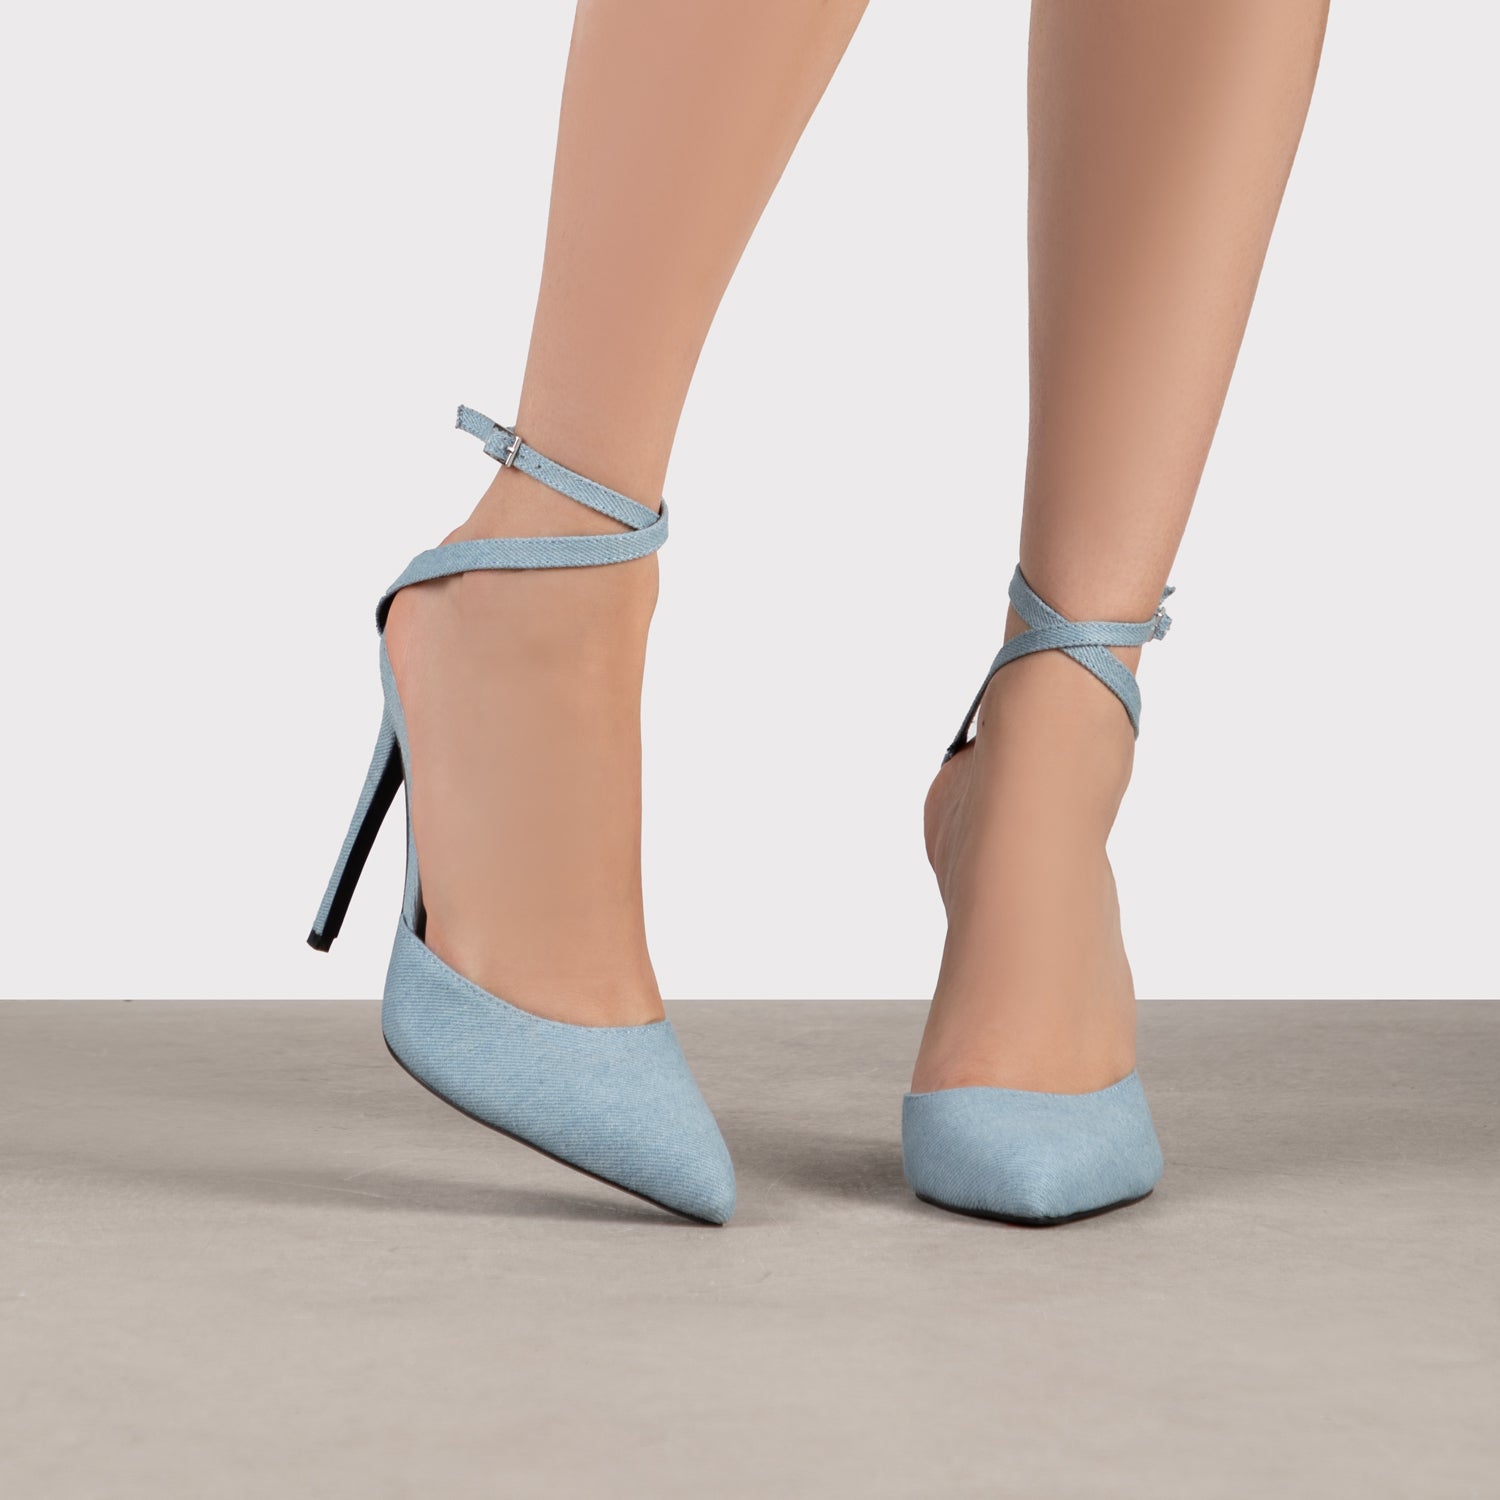 RAID Janiette Heeled Sandals in Blue Denim